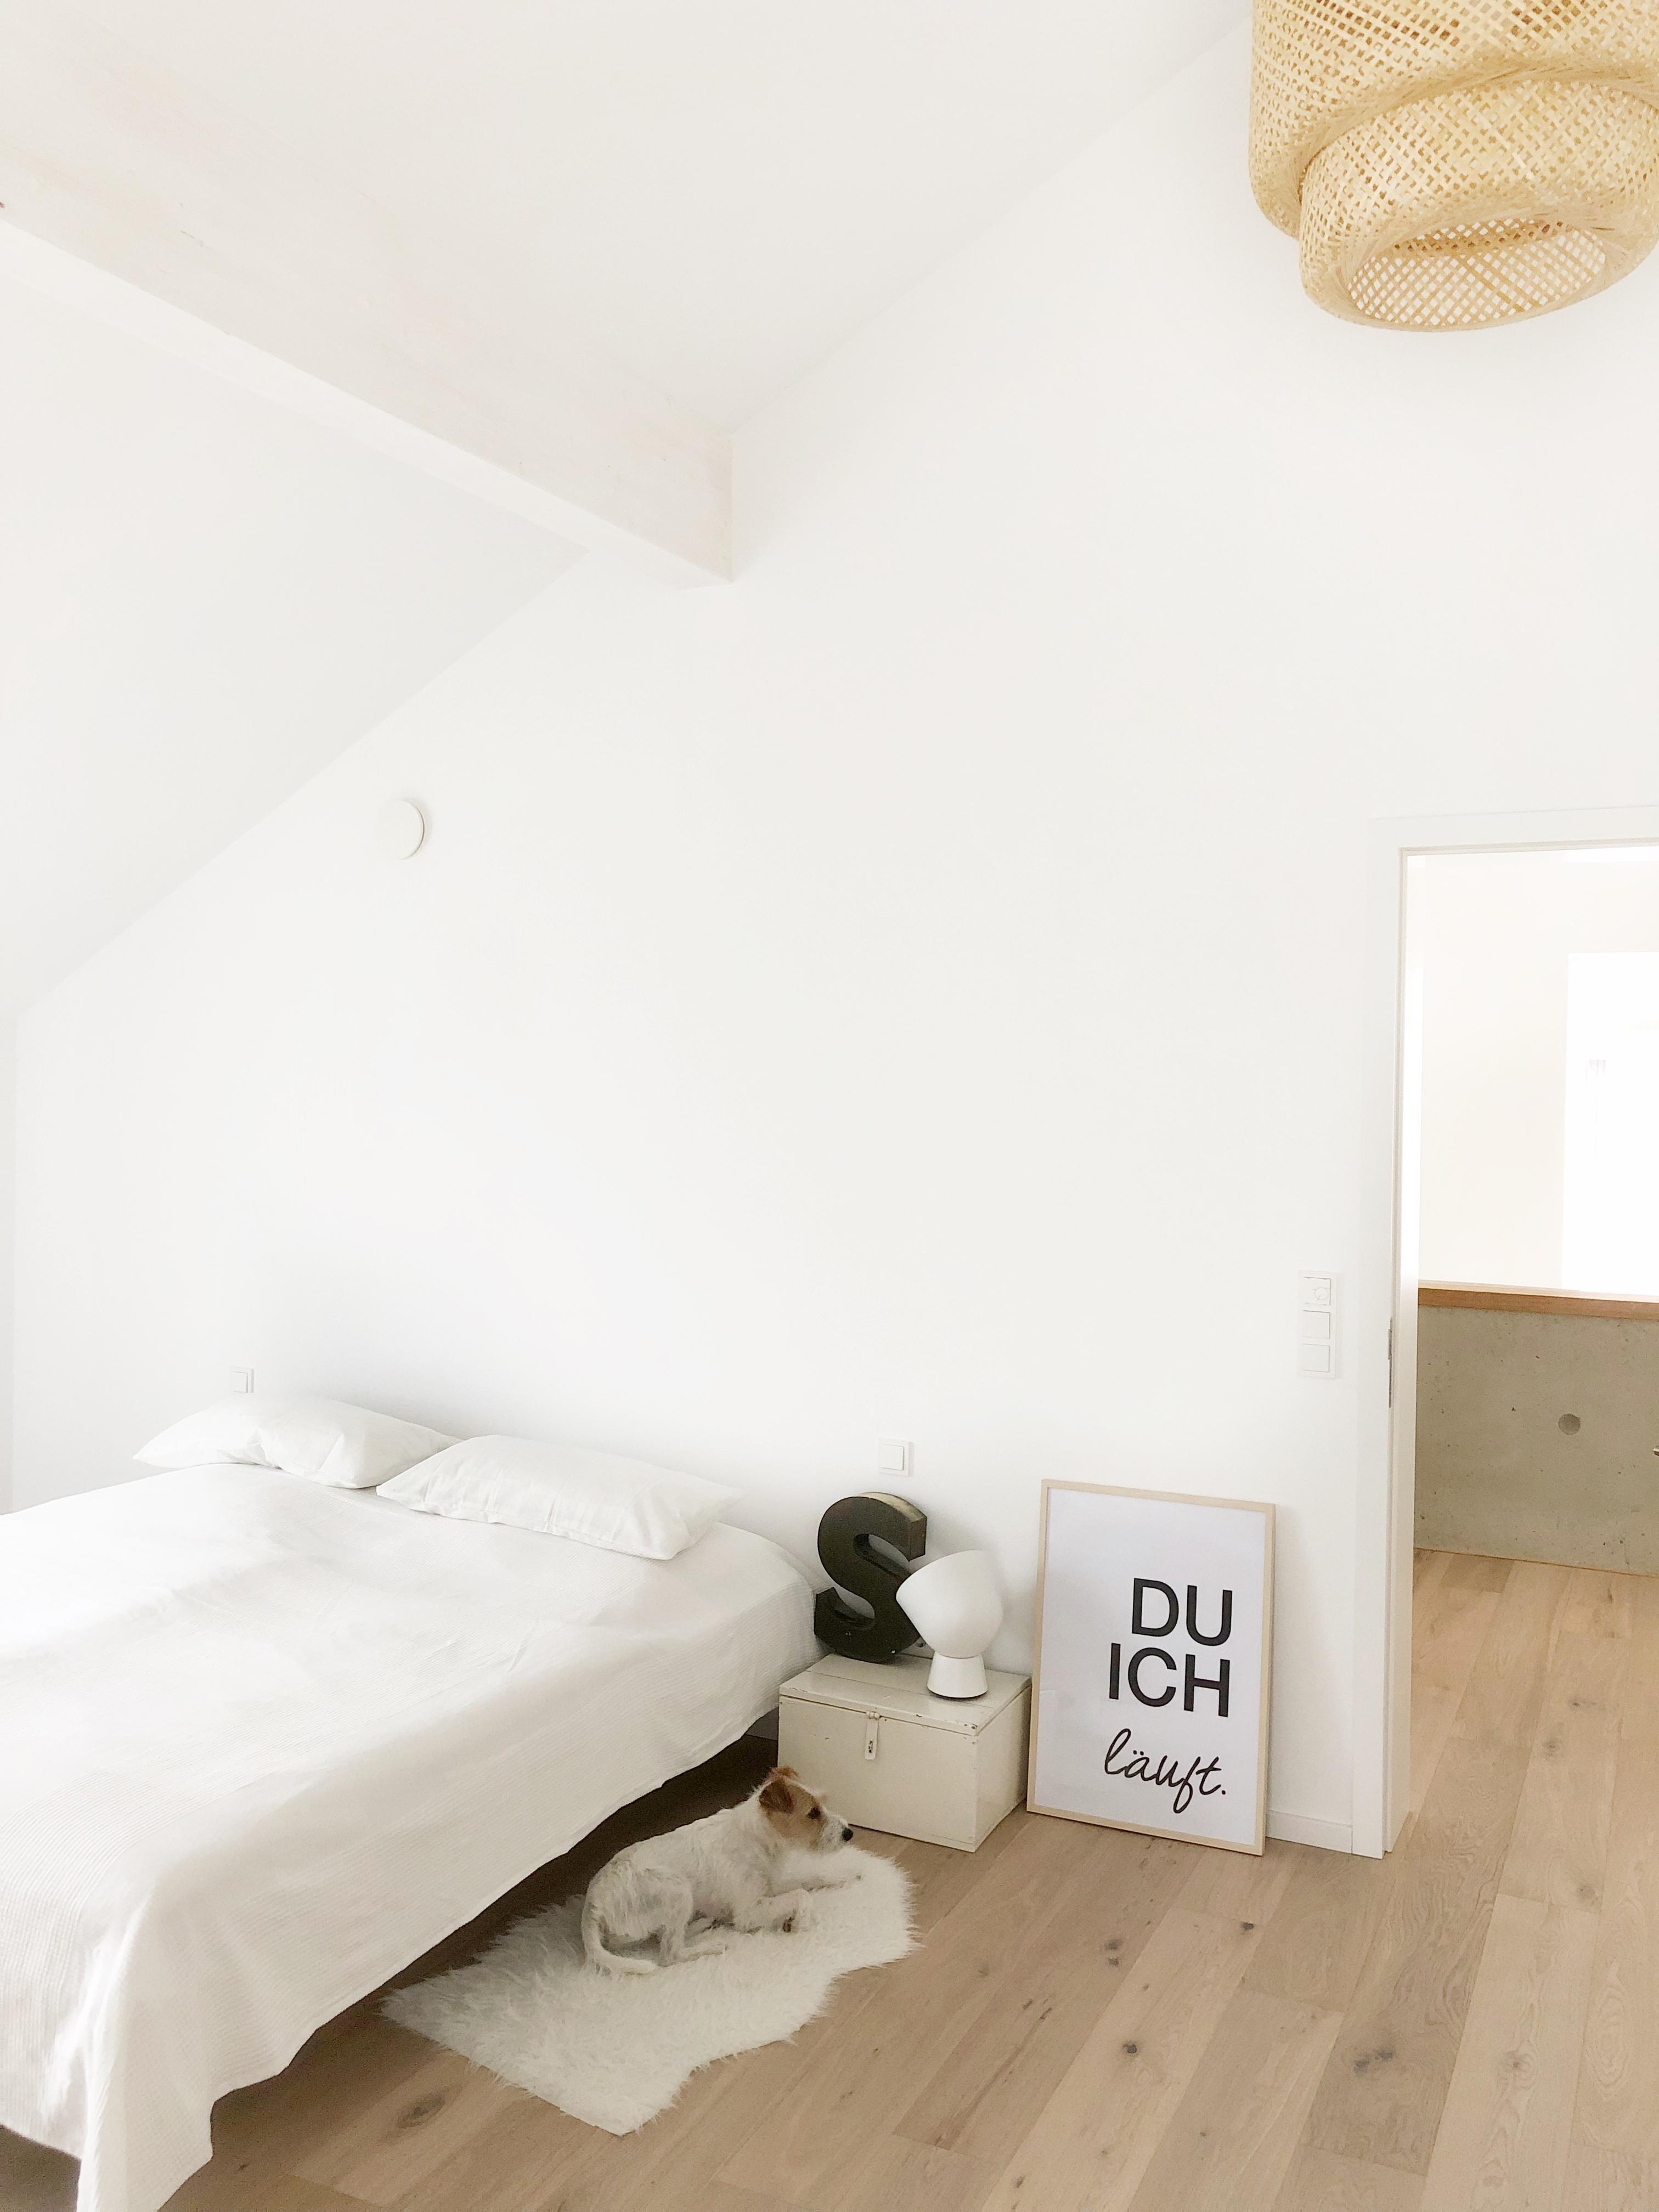 Minimalism
#minimalism#bedroom#whitehome#whiteliving#mystyle#whiteandwood